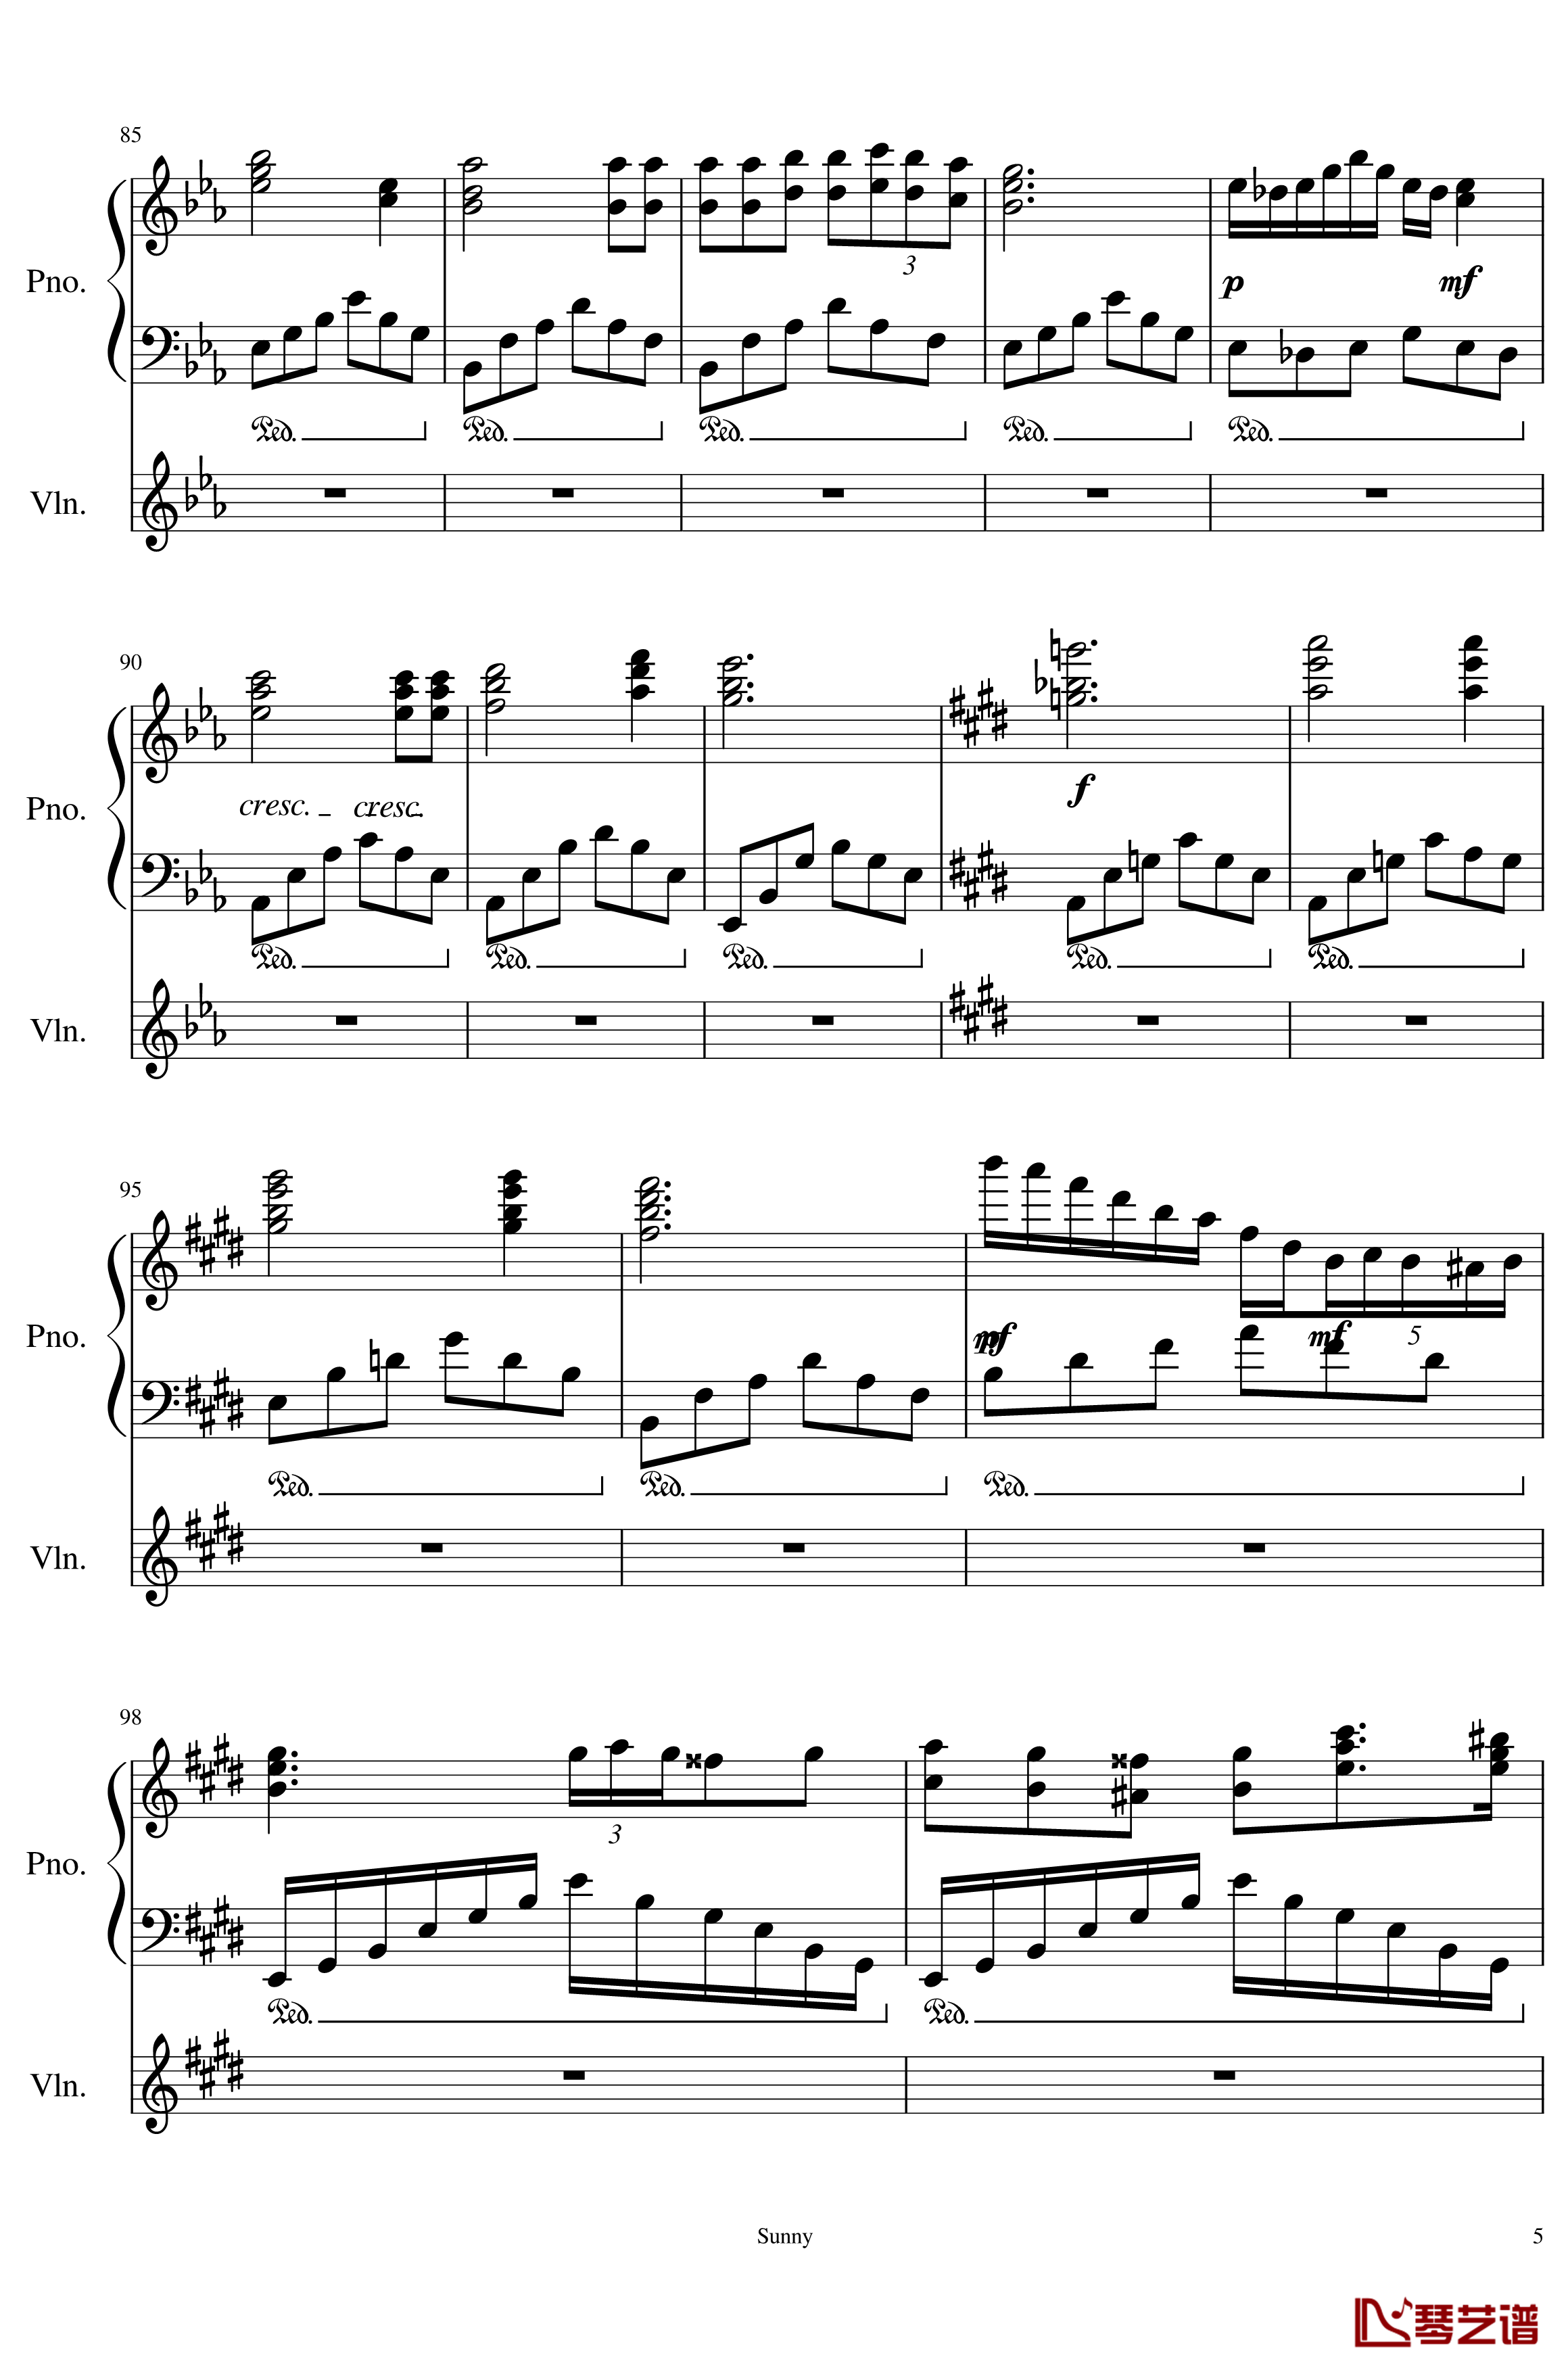 Op.1-1 钢琴谱-My First Music-SunnyAK475